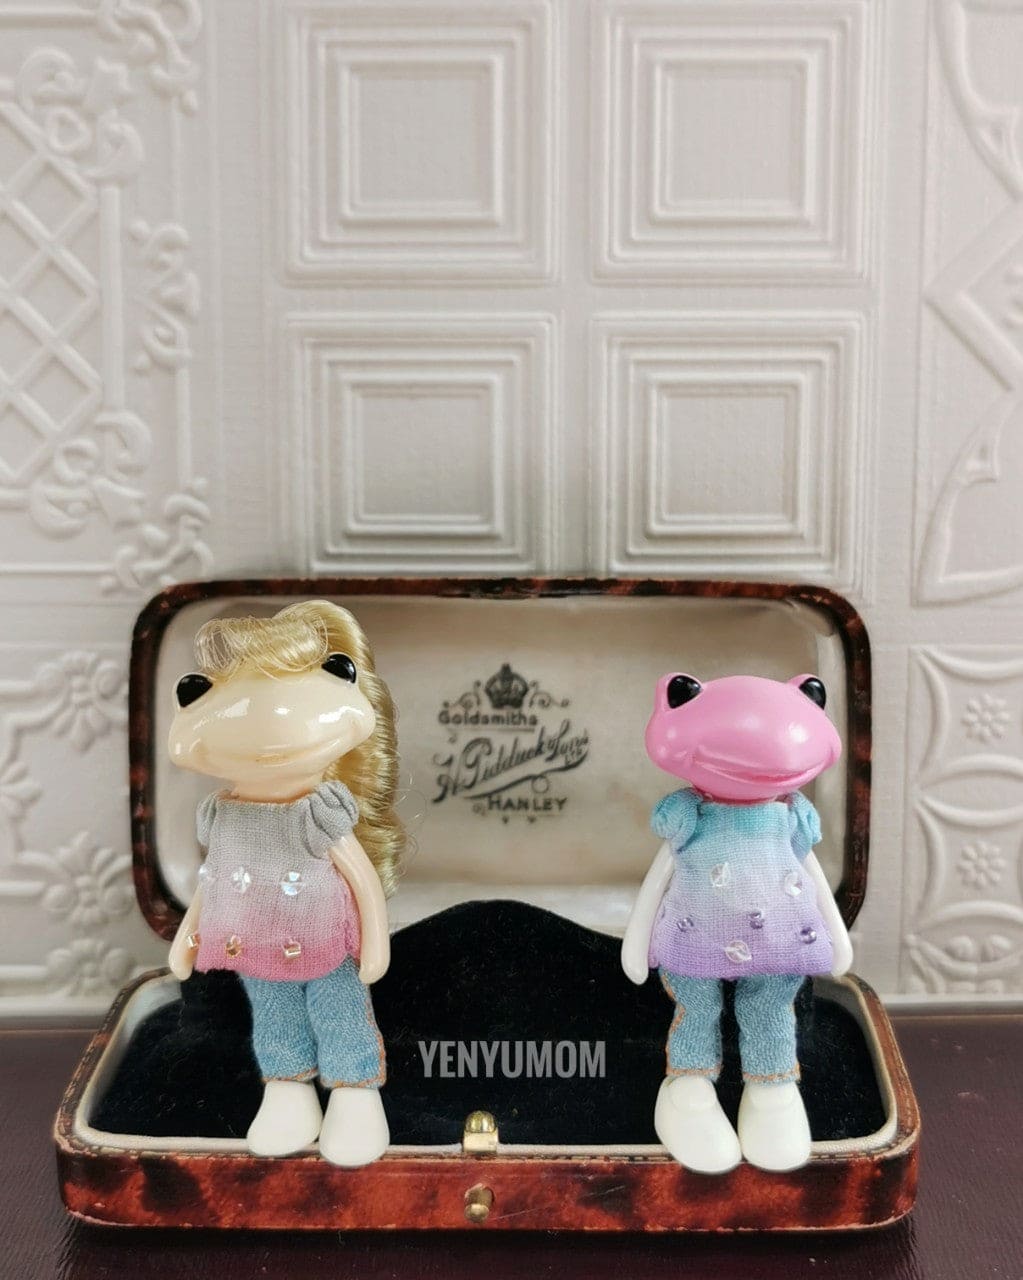 【Yenyumom】Hand Dyed Top & Trousers Set / Furtune Wanda Friends Wonder Frog